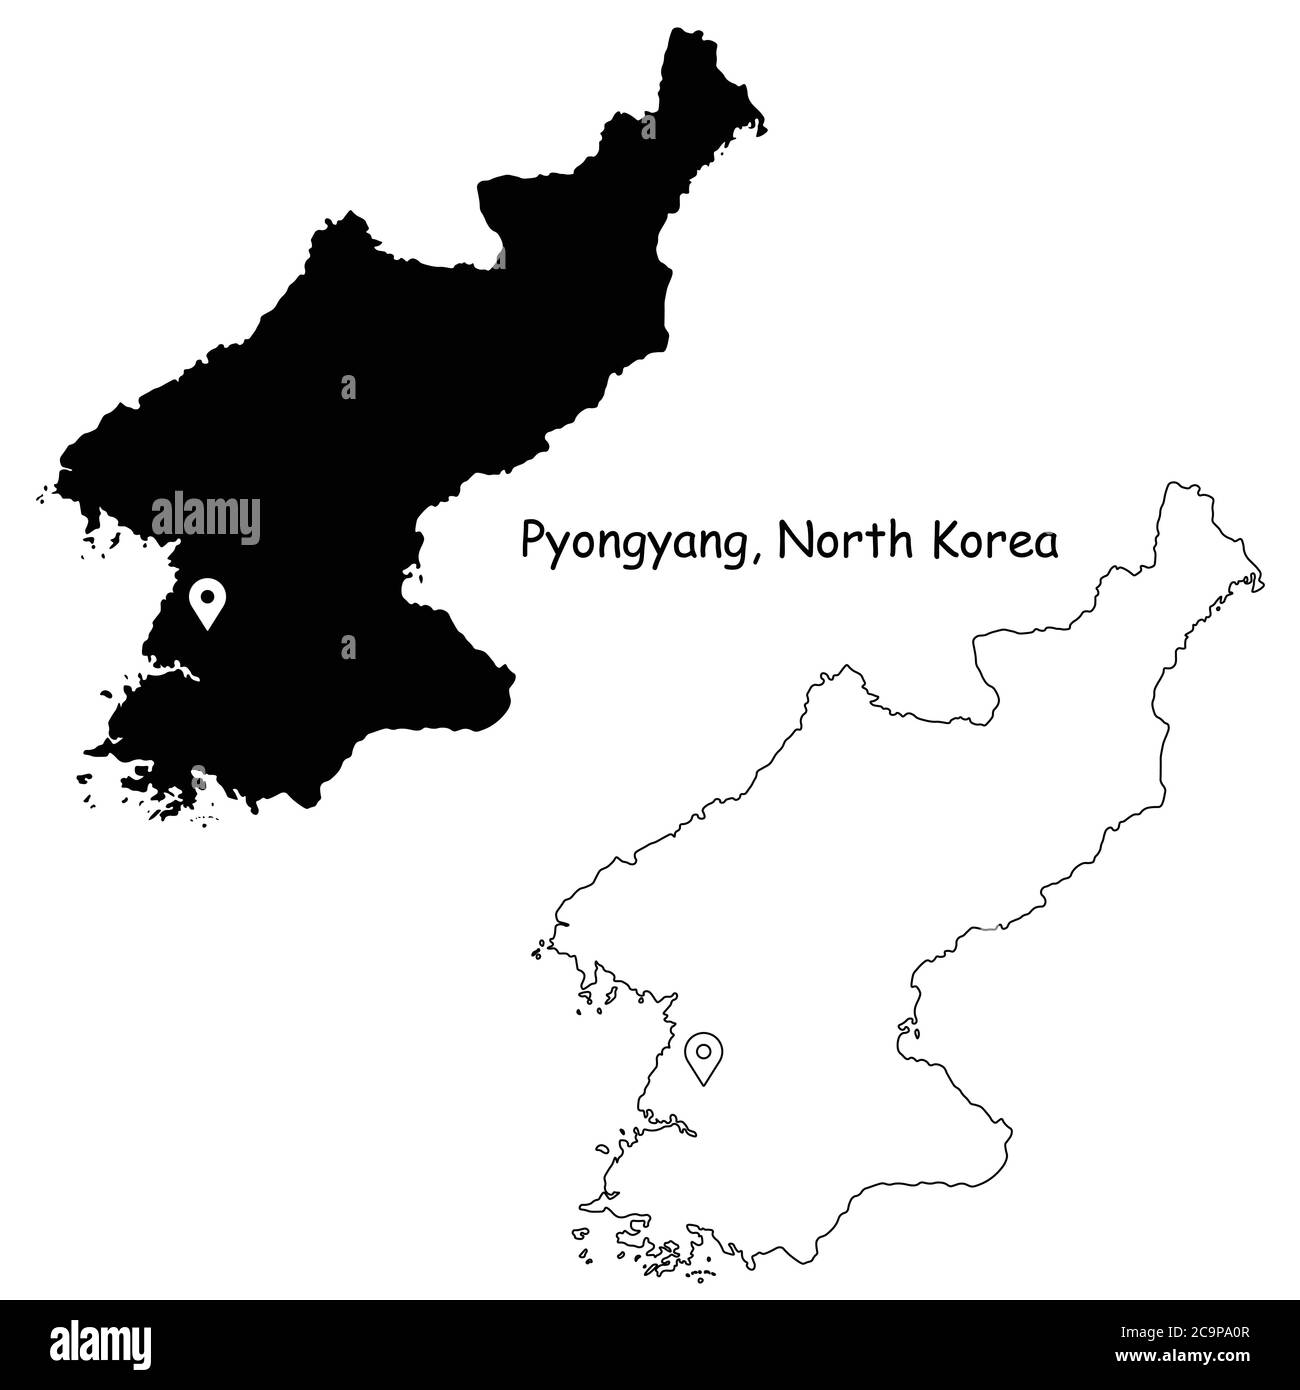 Pyongyang Corée du Nord. Carte détaillée du pays avec broche d'emplacement sur Capital City. Cartes silhouettes et vectorielles noires isolées sur fond blanc. VEC. EPS Illustration de Vecteur